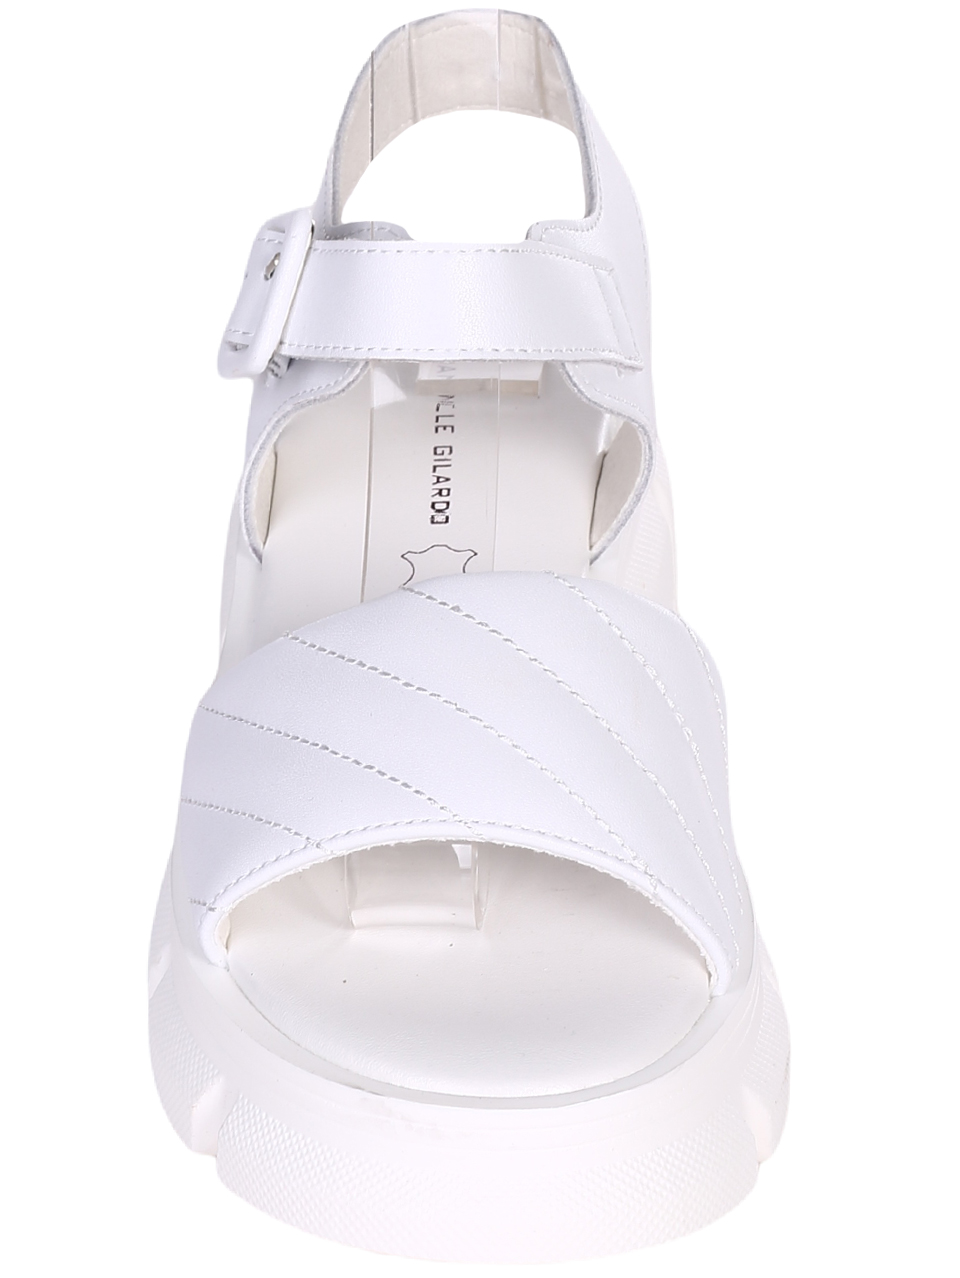 Ежедневни дамски сандали от естествена кожа в бяло 4AF-23200 white